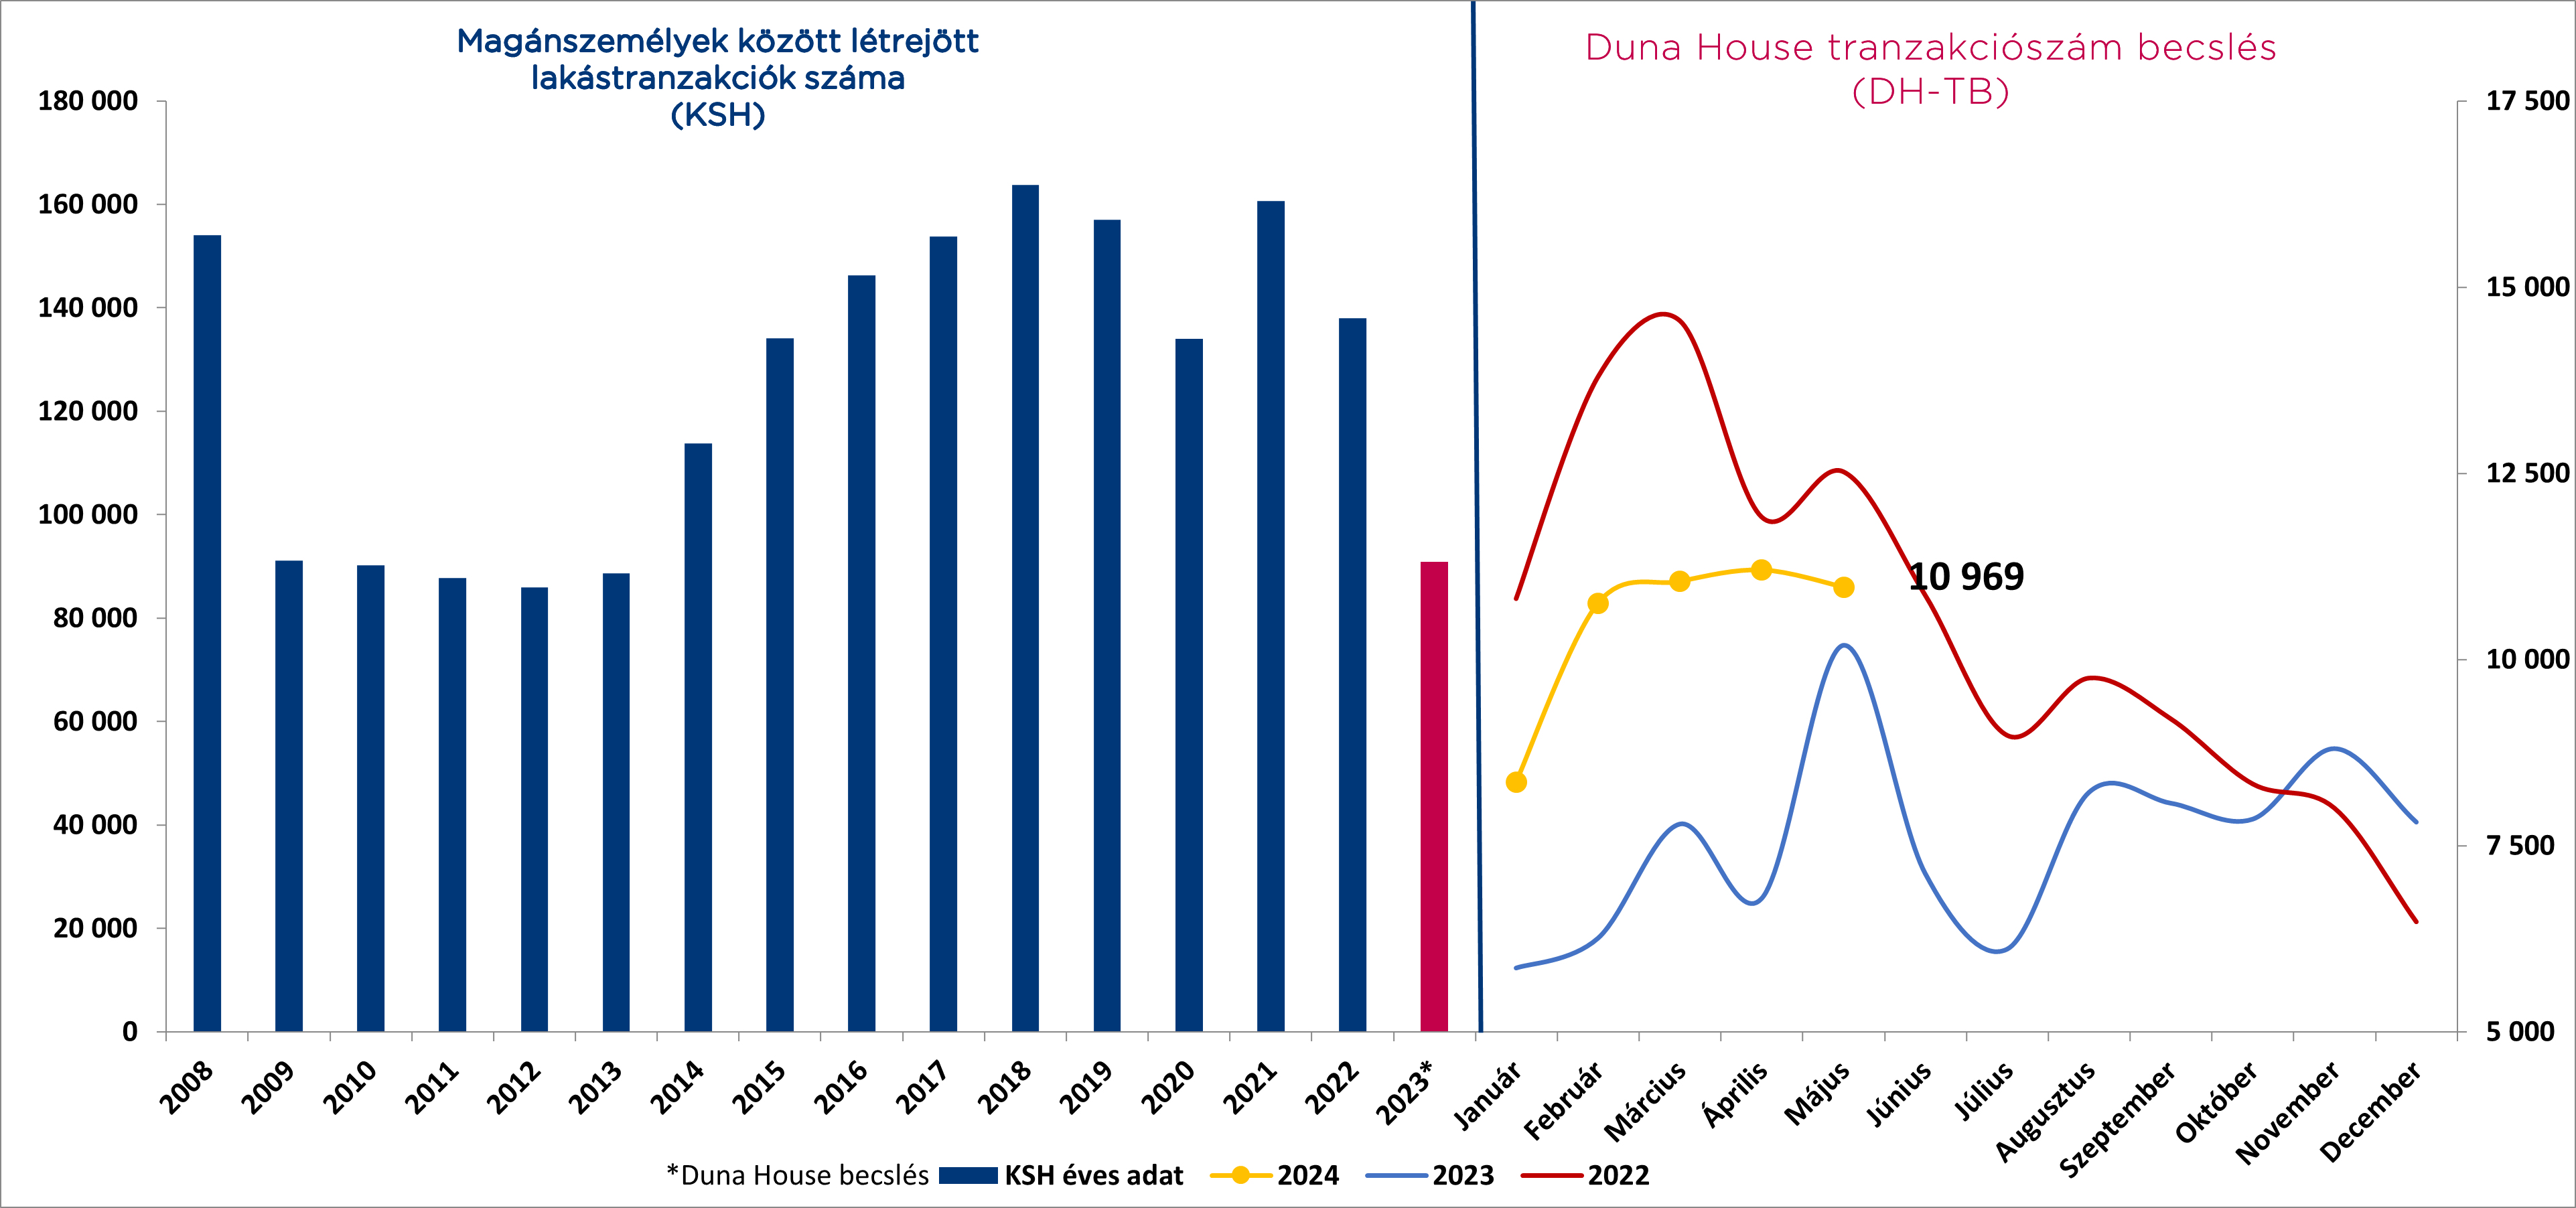 A Duna House közzéteszi tranzakciószám-becslését 2024. május hónapra.